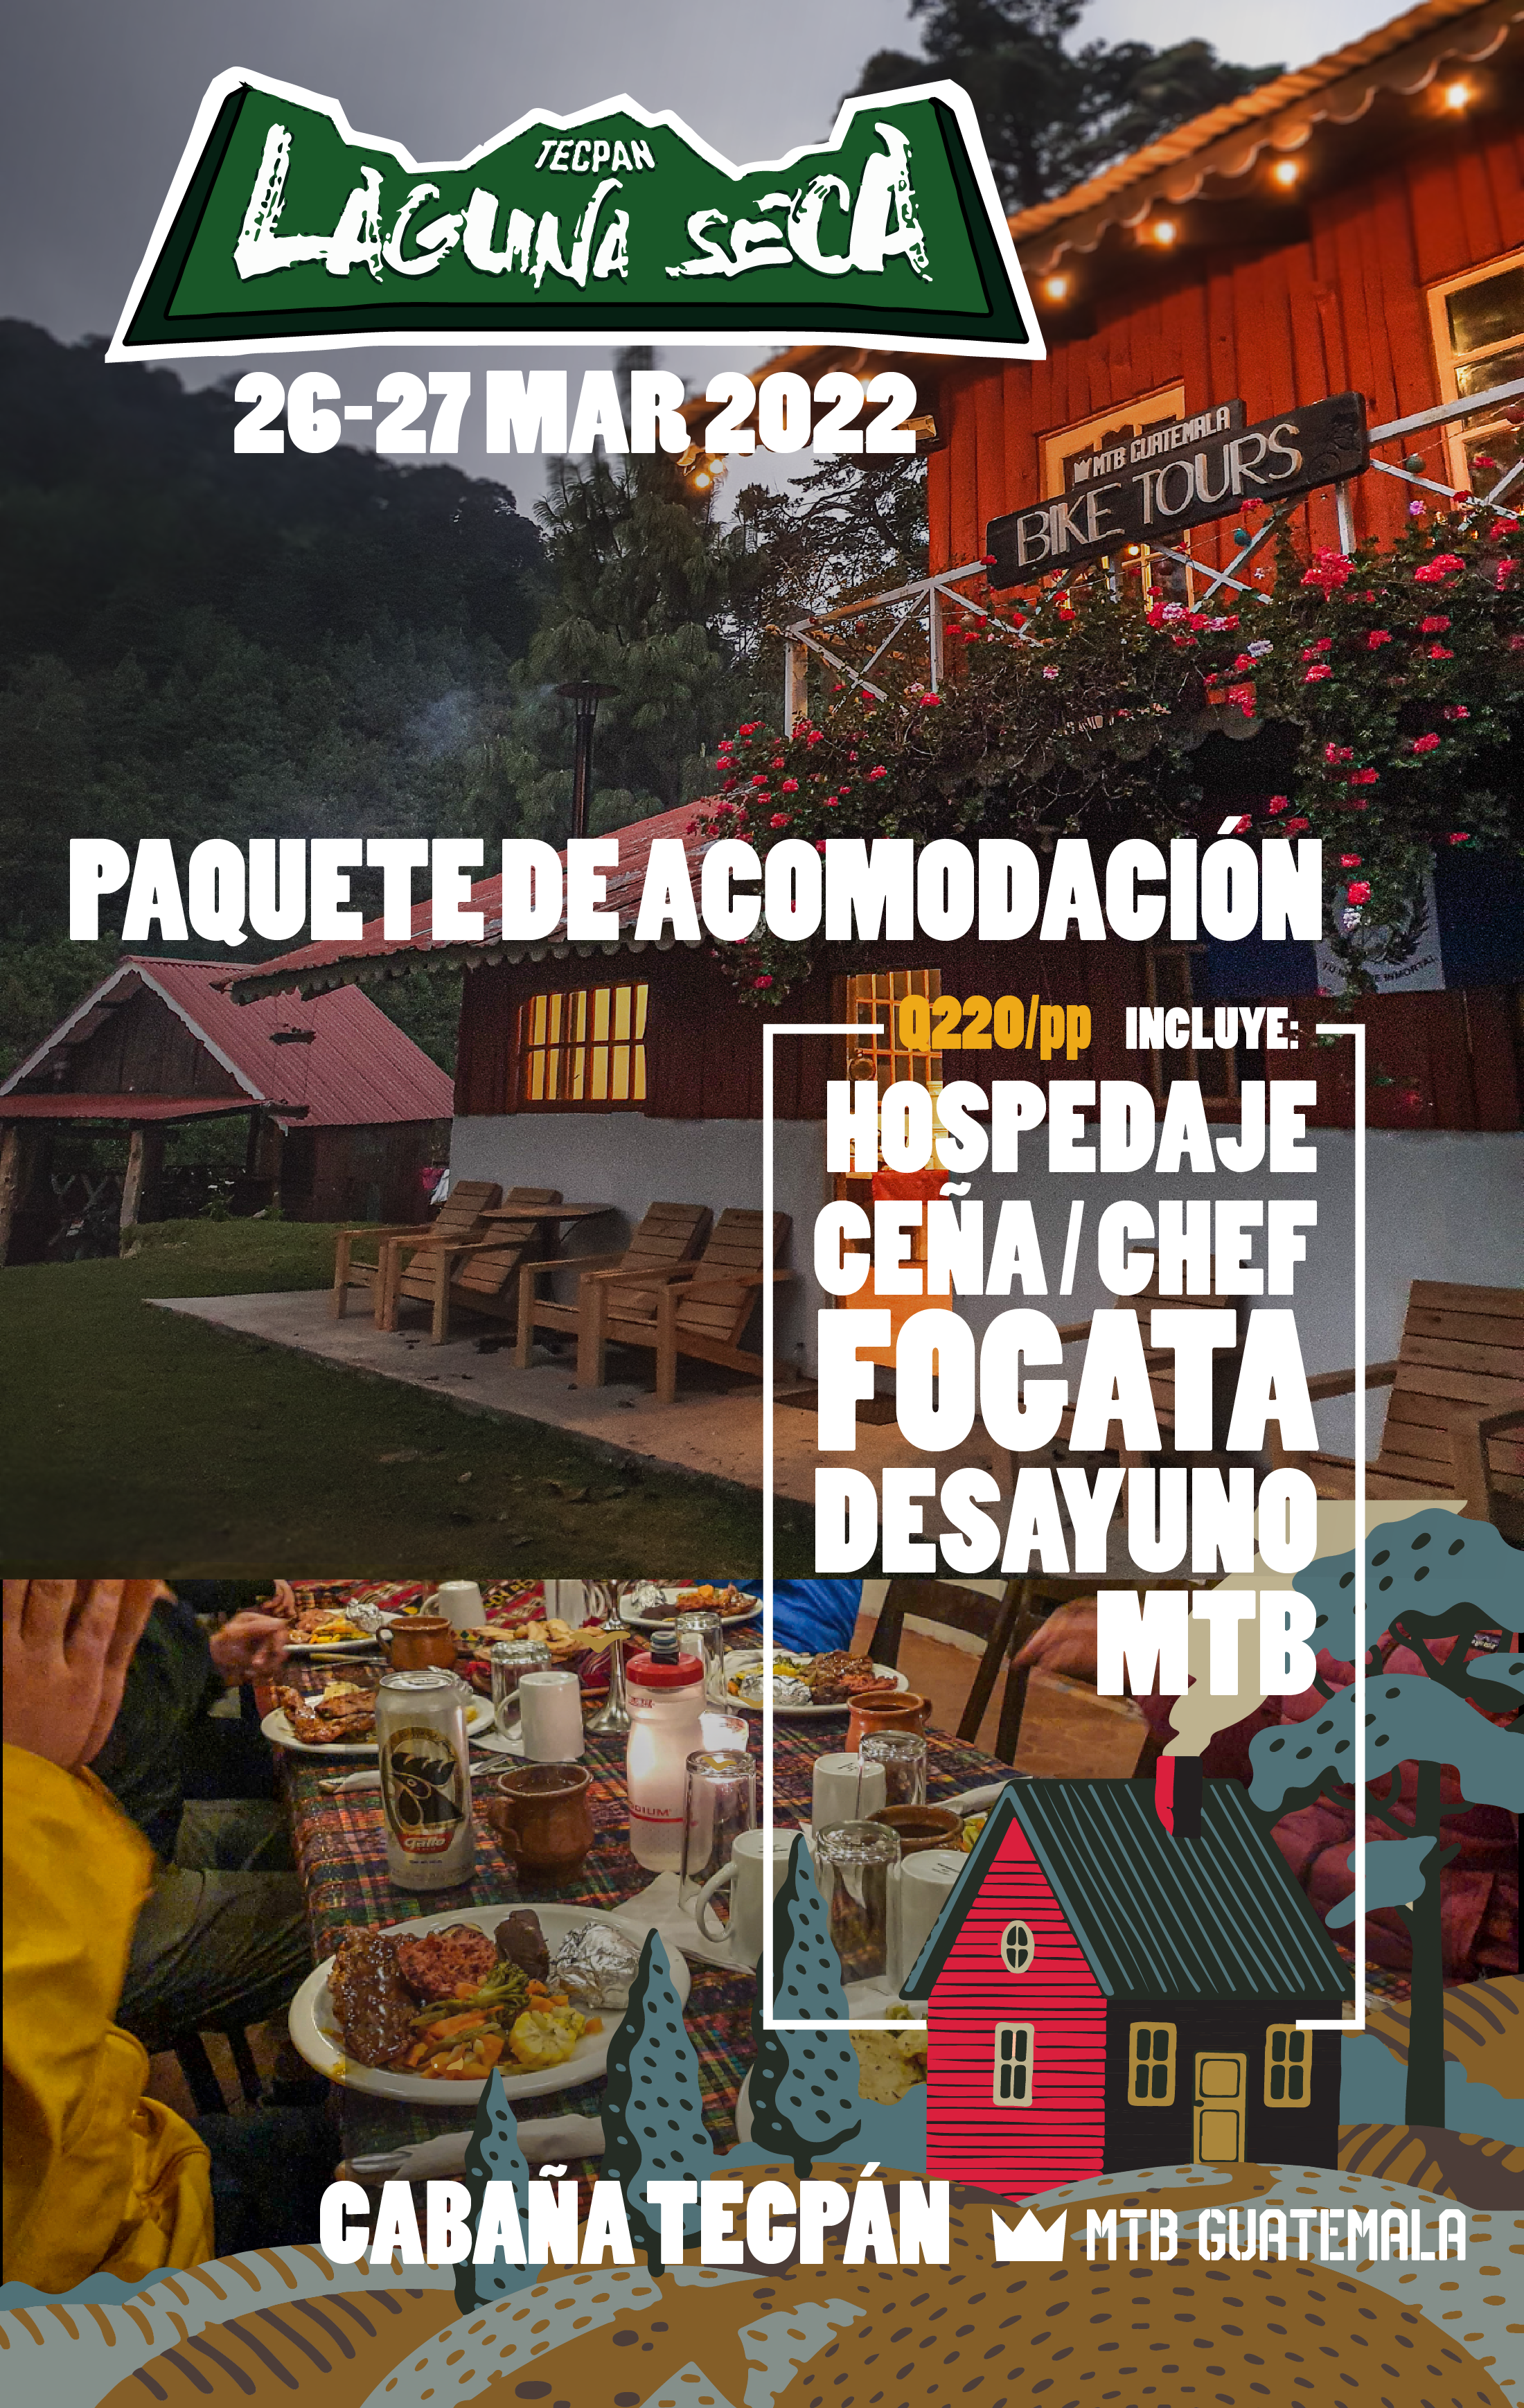 AEG Tecpán - Accommodation Package